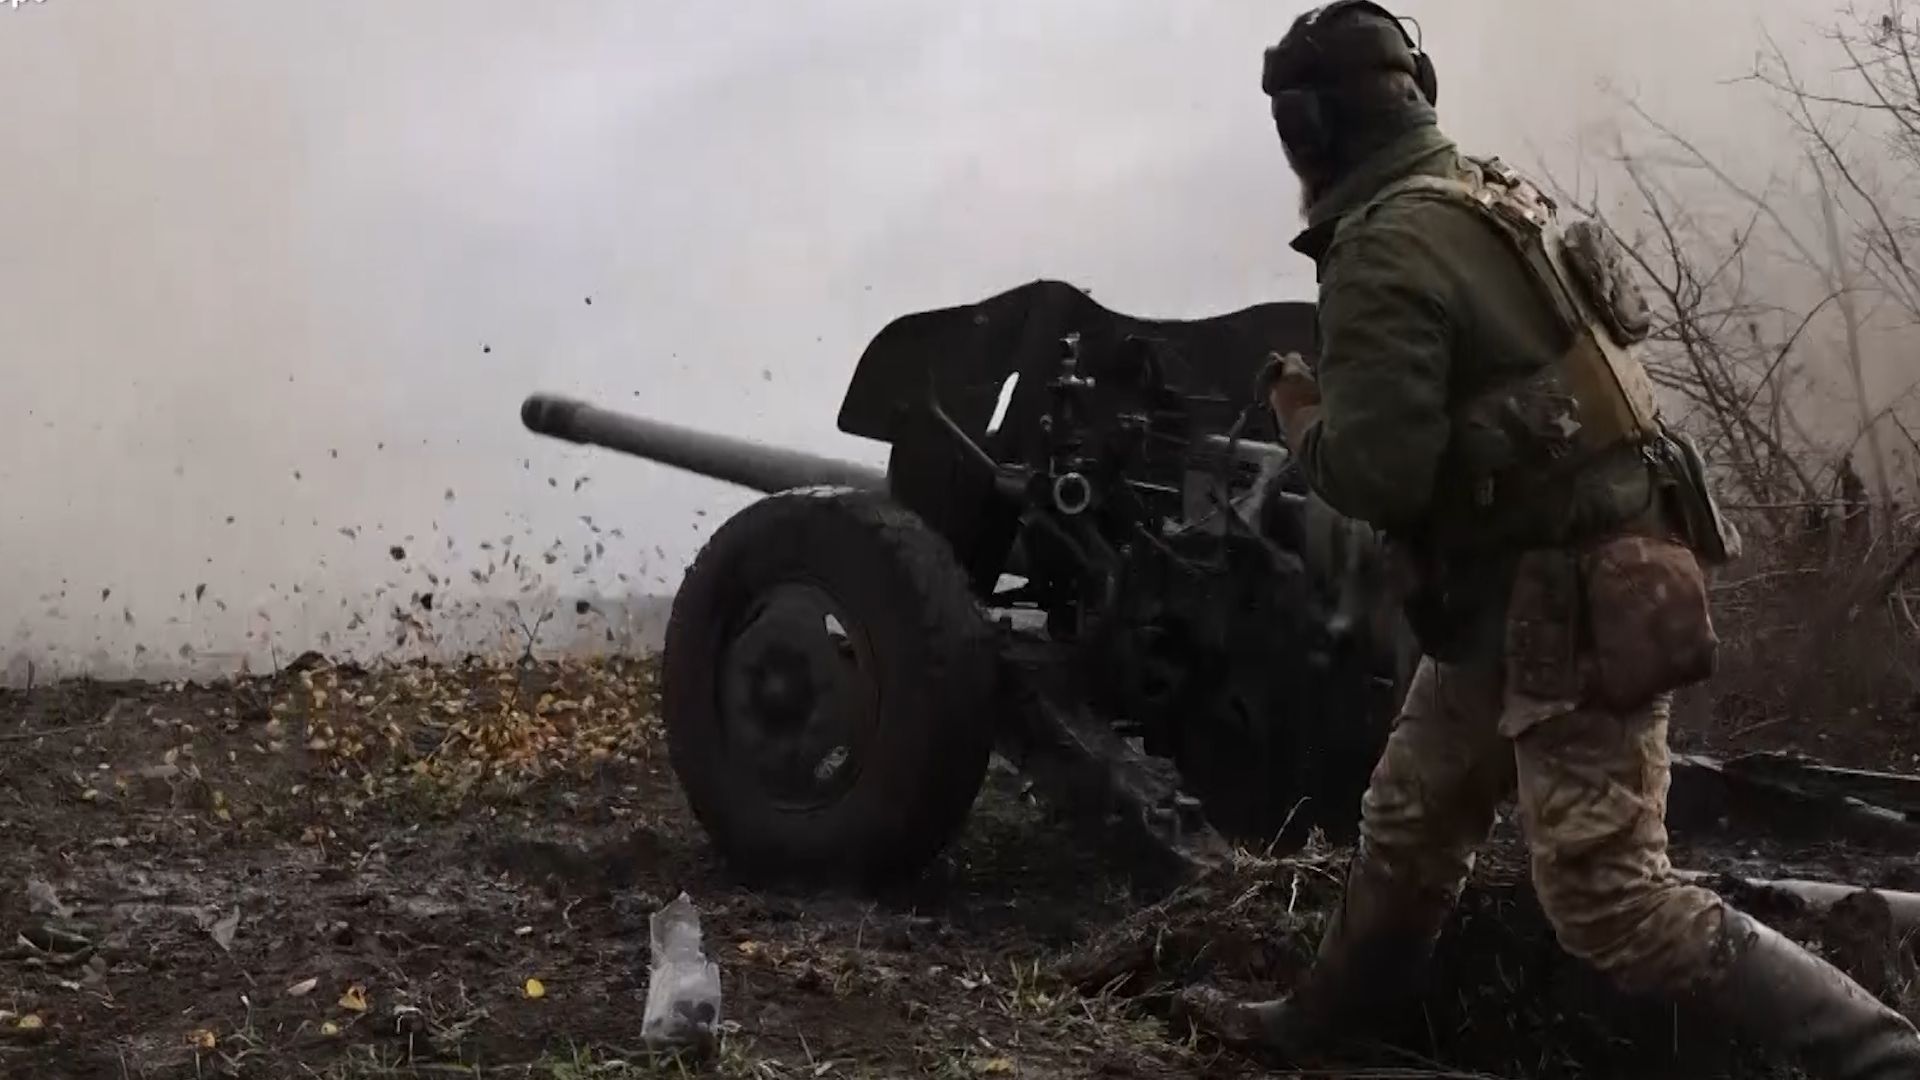 Ukrajinci v první linii používají výzbroj ze sovětské éry. I přes své stáří je účinná, tvrdí vojáci